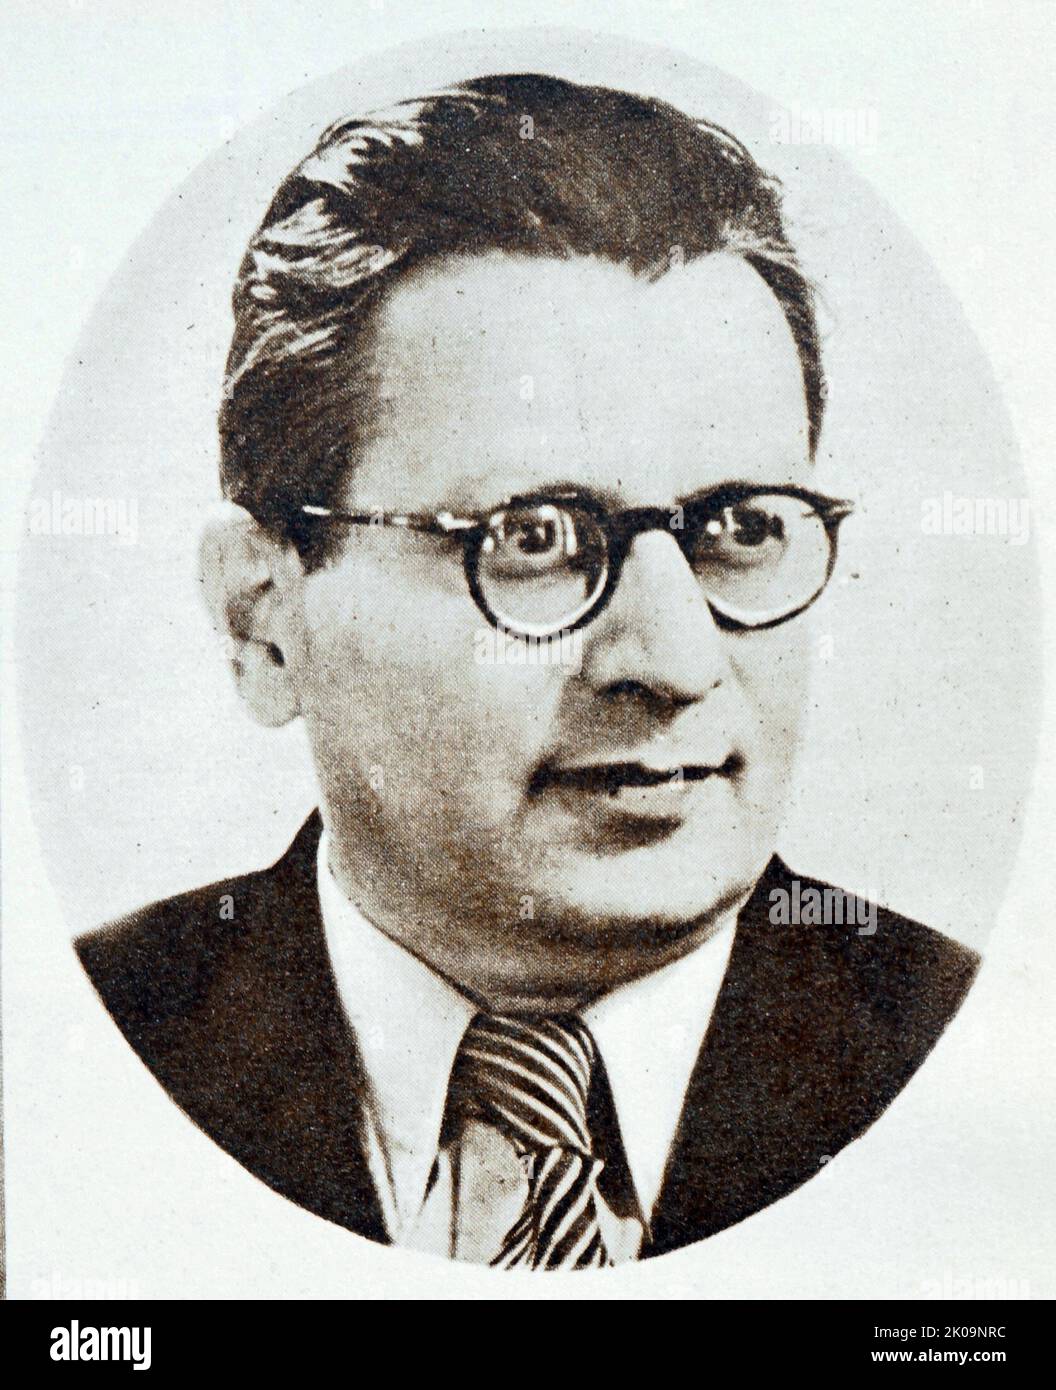 Traicho Kostov Djunev (17. Juni 1897, Sofia - 16. Dezember 1949) war bulgarischer Politiker, ehemaliger Präsident des Ministerrats und Sekretär des Zentralkomitees der Kommunistischen Partei Bulgariens. Traicho Kostov wurde im Alter von 52 Jahren vom Obersten Gerichtshof Bulgariens zum Tode verurteilt. Er wurde zusammen mit zehn anderen in Sofia vom 7. Dezember bis zum 14. Dezember 1949 vor Gericht gestellt. Zwei Tage später wurde er hingerichtet. Kostov war die führende Figur der bulgarischen Kommunistischen Partei. Stockfoto